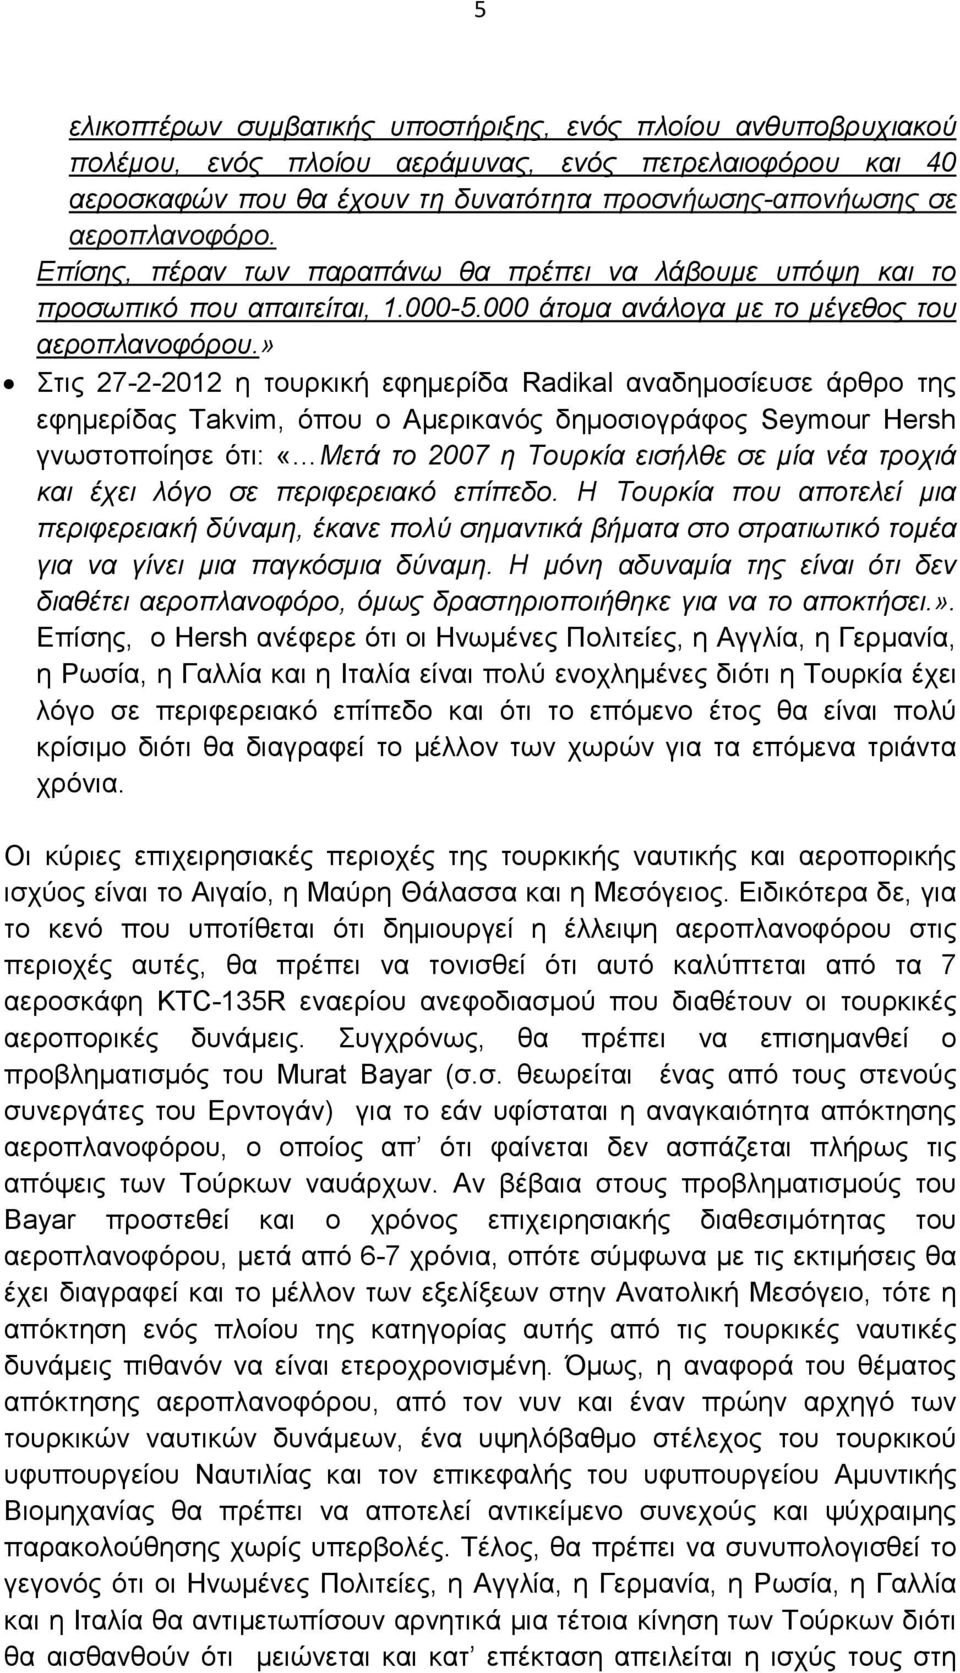 » Στις 27-2-2012 η τουρκική εφηµερίδα Radikal αναδηµοσίευσε άρθρο της εφηµερίδας Τakvim, όπου ο Αµερικανός δηµοσιογράφος Seymour Hersh γνωστοποίησε ότι: «Μετά το 2007 η Τουρκία εισήλθε σε µία νέα